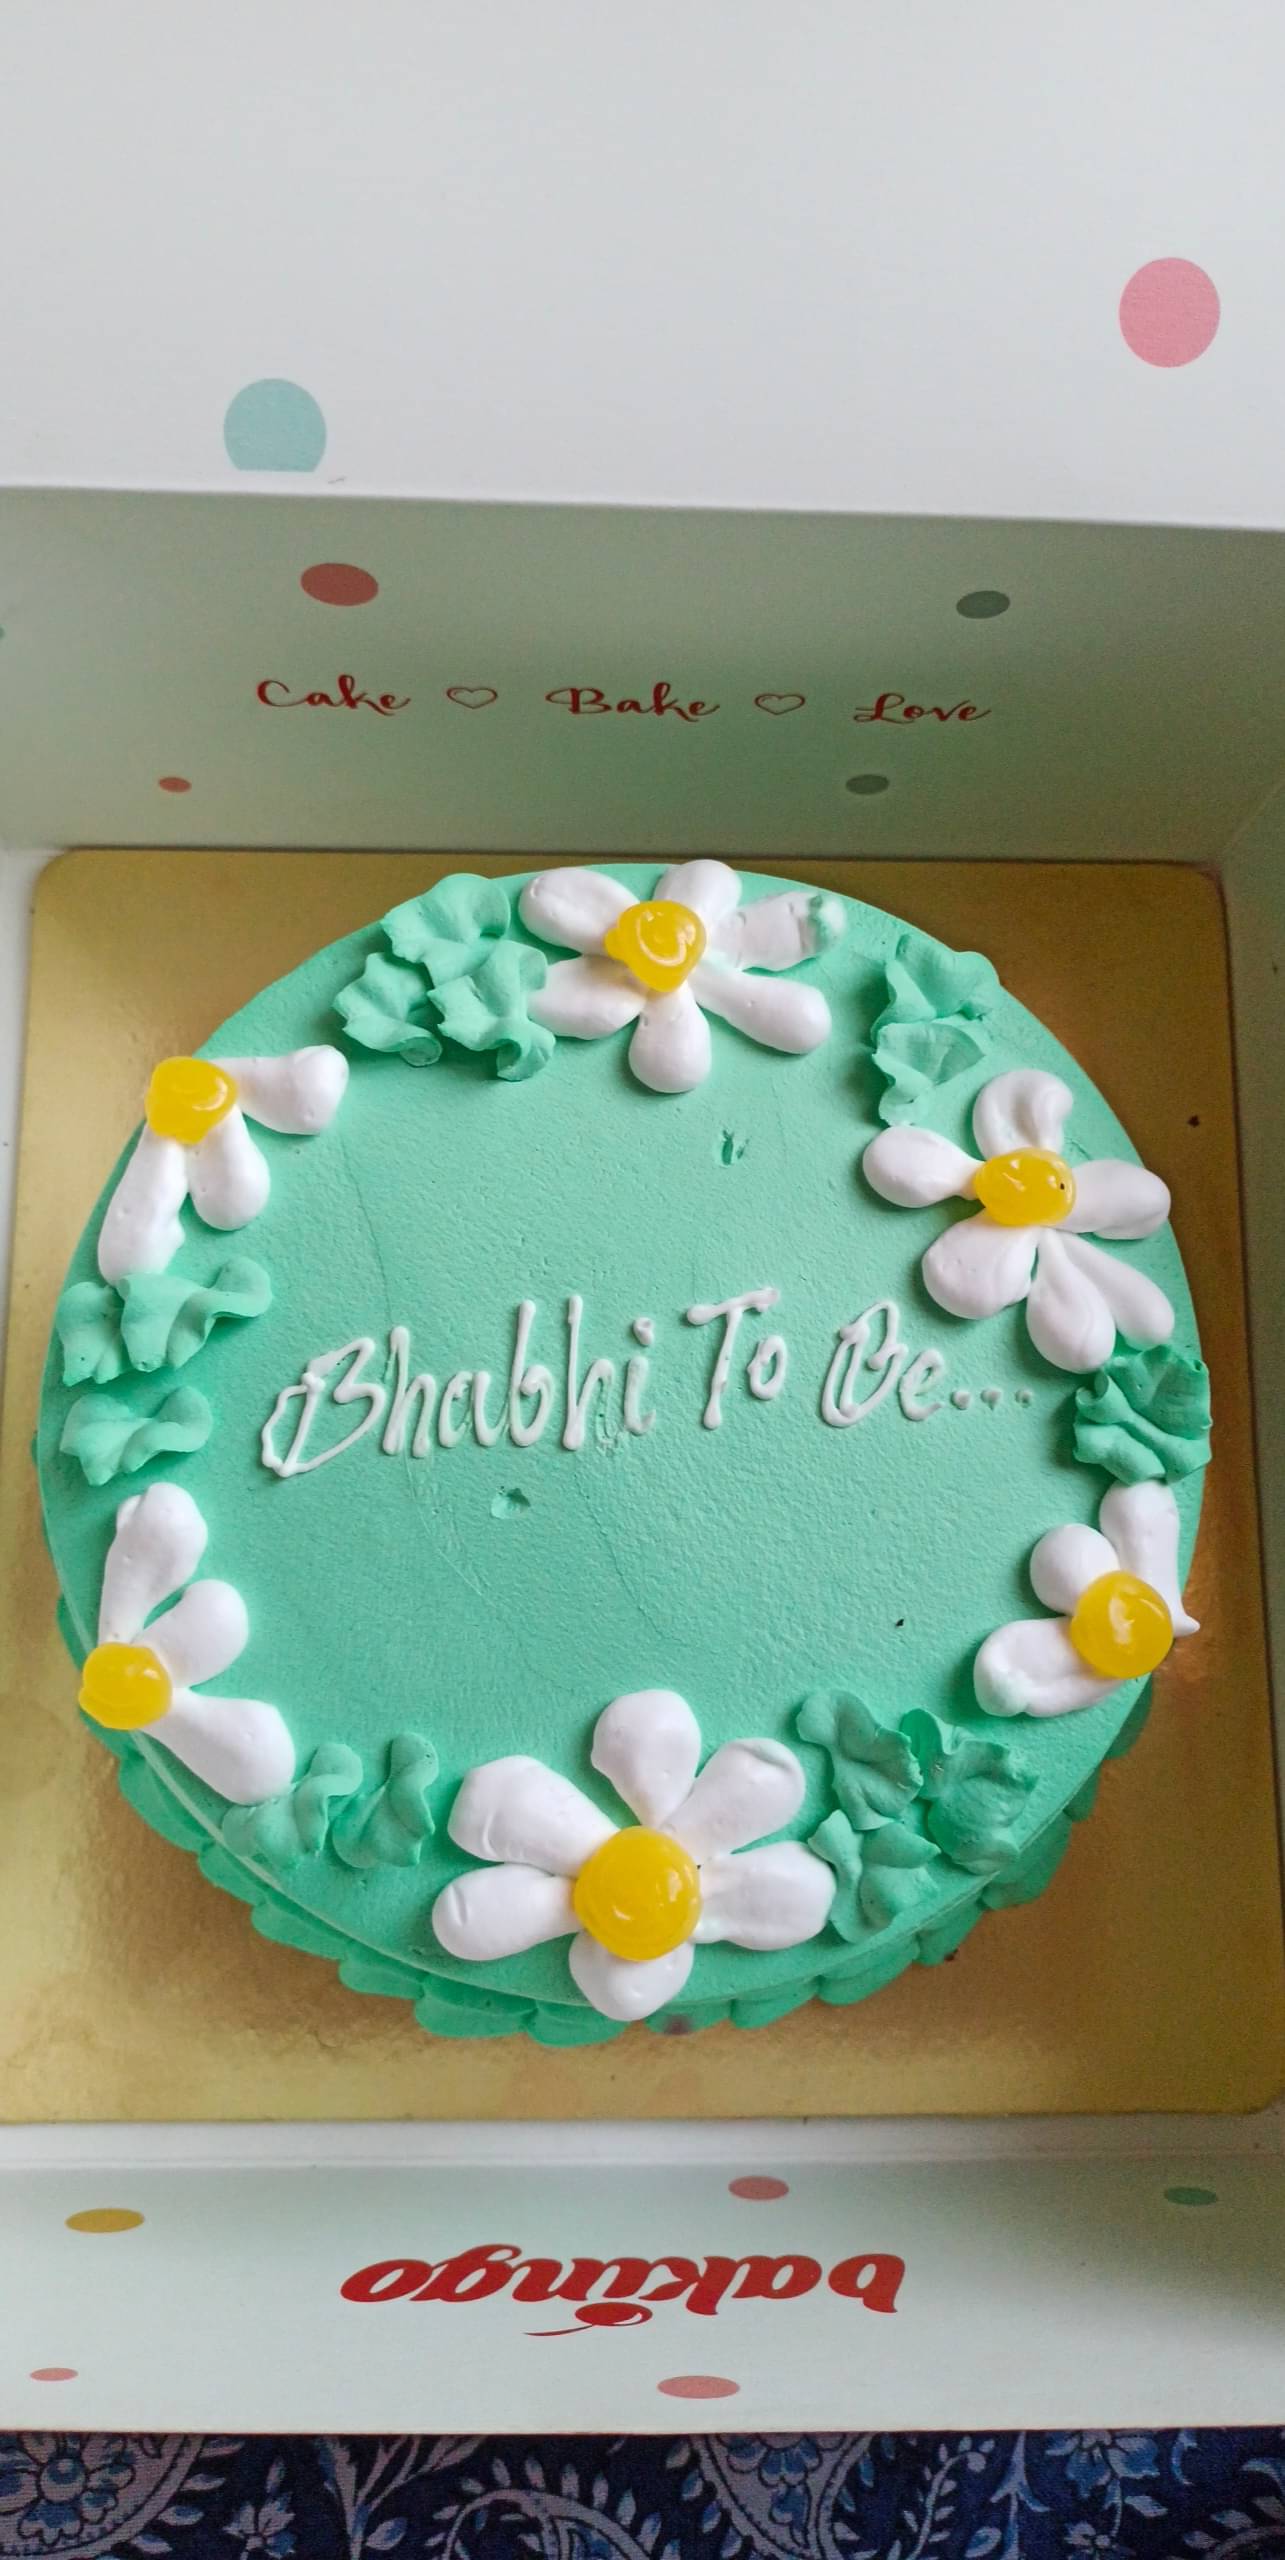 Buy/Send Kit Kat Cake For Bhabhi Online @ Rs. 1899 - SendBestGift